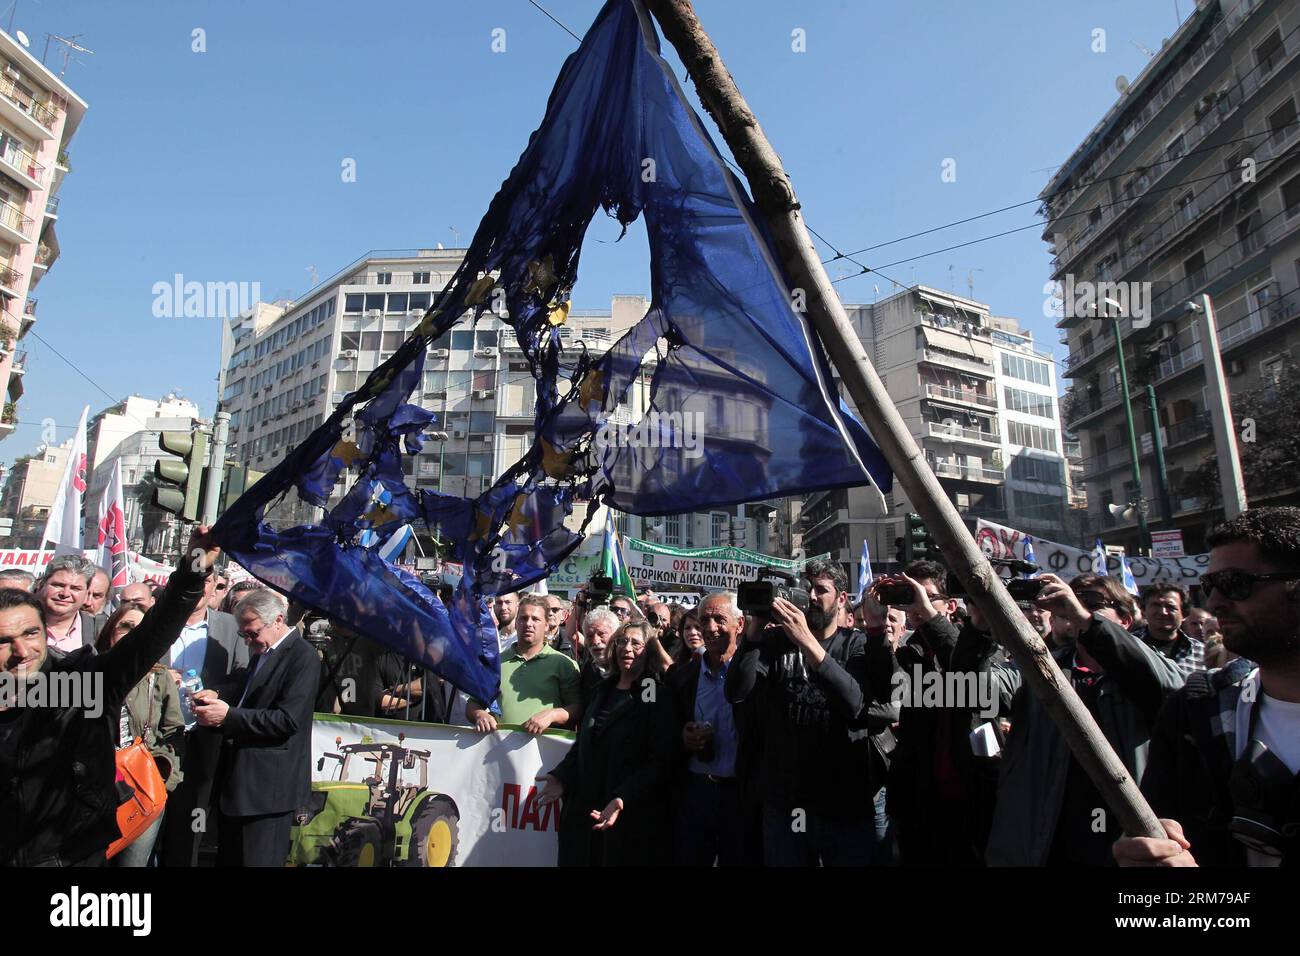 ATENE, 19 febbraio 2014 -- la gente protesta fuori dalla camera del Parlamento contro le politiche fiscali governative ad Atene, in Grecia, 19 febbraio 2014. Circa 4.000 persone, tra cui membri dei sindacati dei funzionari, hanno partecipato alla manifestazione pacifica fuori della camera del Parlamento. Il governo greco si è impegnato a continuare i tagli alla spesa e le riforme economiche in cambio di miliardi di euro di prestiti internazionali di salvataggio. (Xinhua/Marios Lolos)(ctt) GRECIA-ATENE-DIMOSTRAZIONE PUBLICATIONxNOTxINxCHN Atene 19 febbraio 2014 celebrità protestano fuori dalla camera del Parlamento contro la tassa governativa Polici Foto Stock